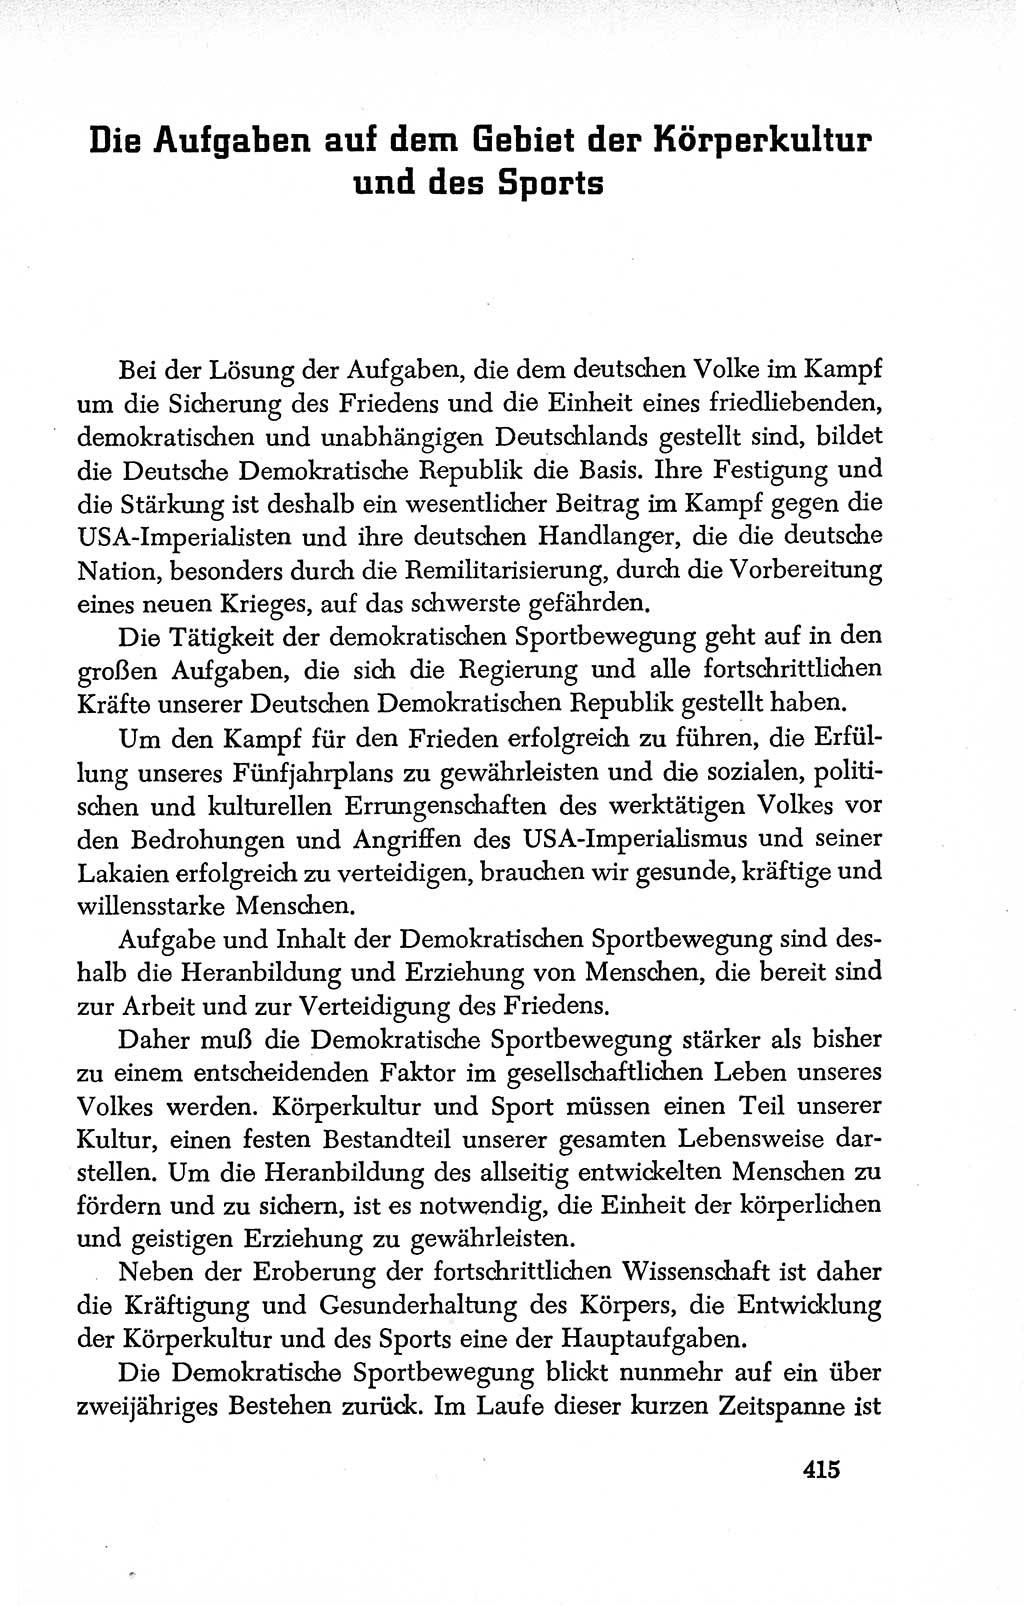 Dokumente der Sozialistischen Einheitspartei Deutschlands (SED) [Deutsche Demokratische Republik (DDR)] 1950-1952, Seite 415 (Dok. SED DDR 1950-1952, S. 415)